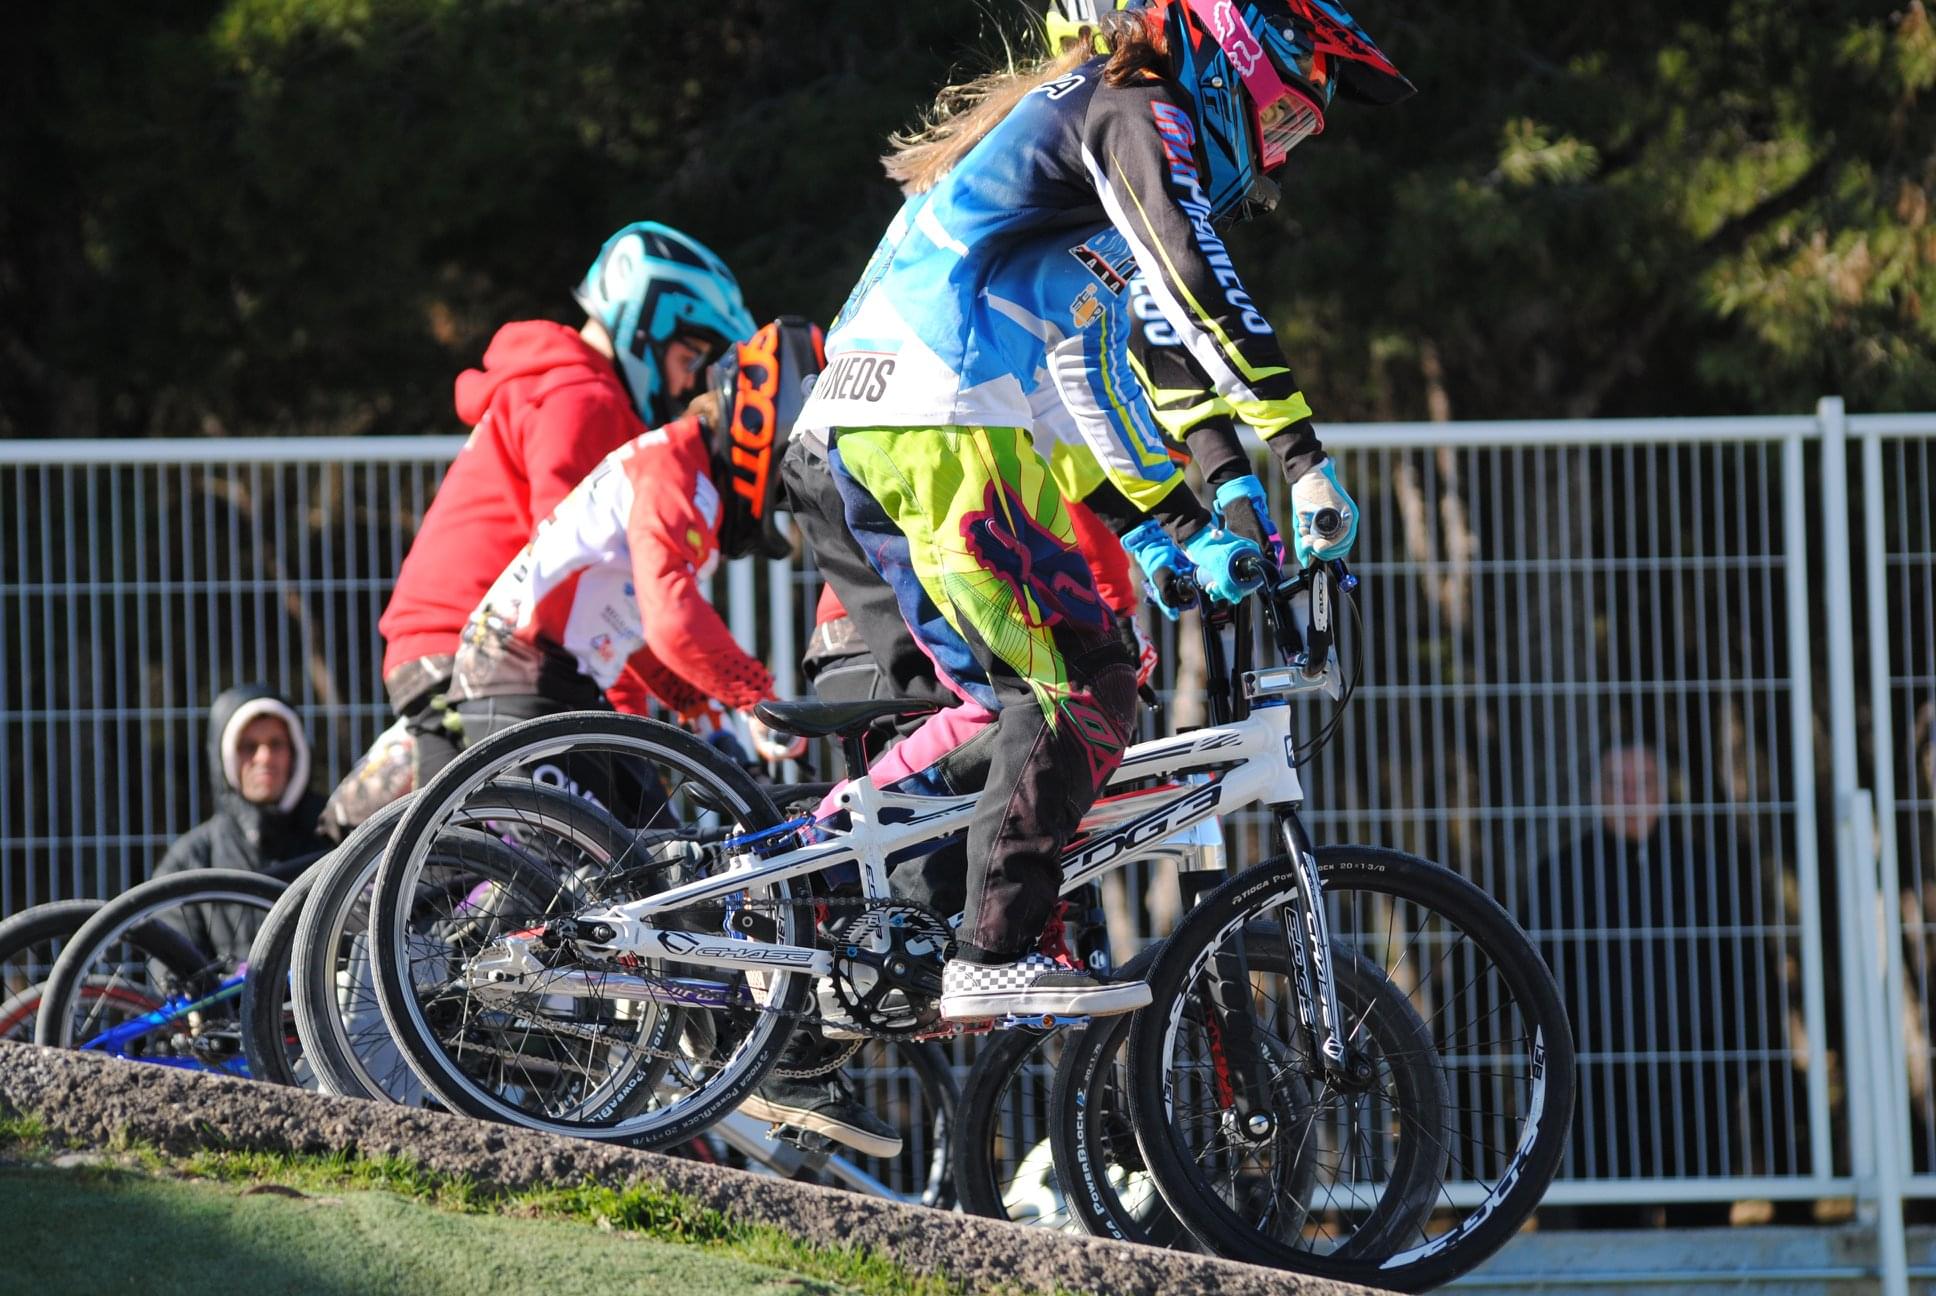 Trofeo de San Valero BMX abre la Liga Pirineos